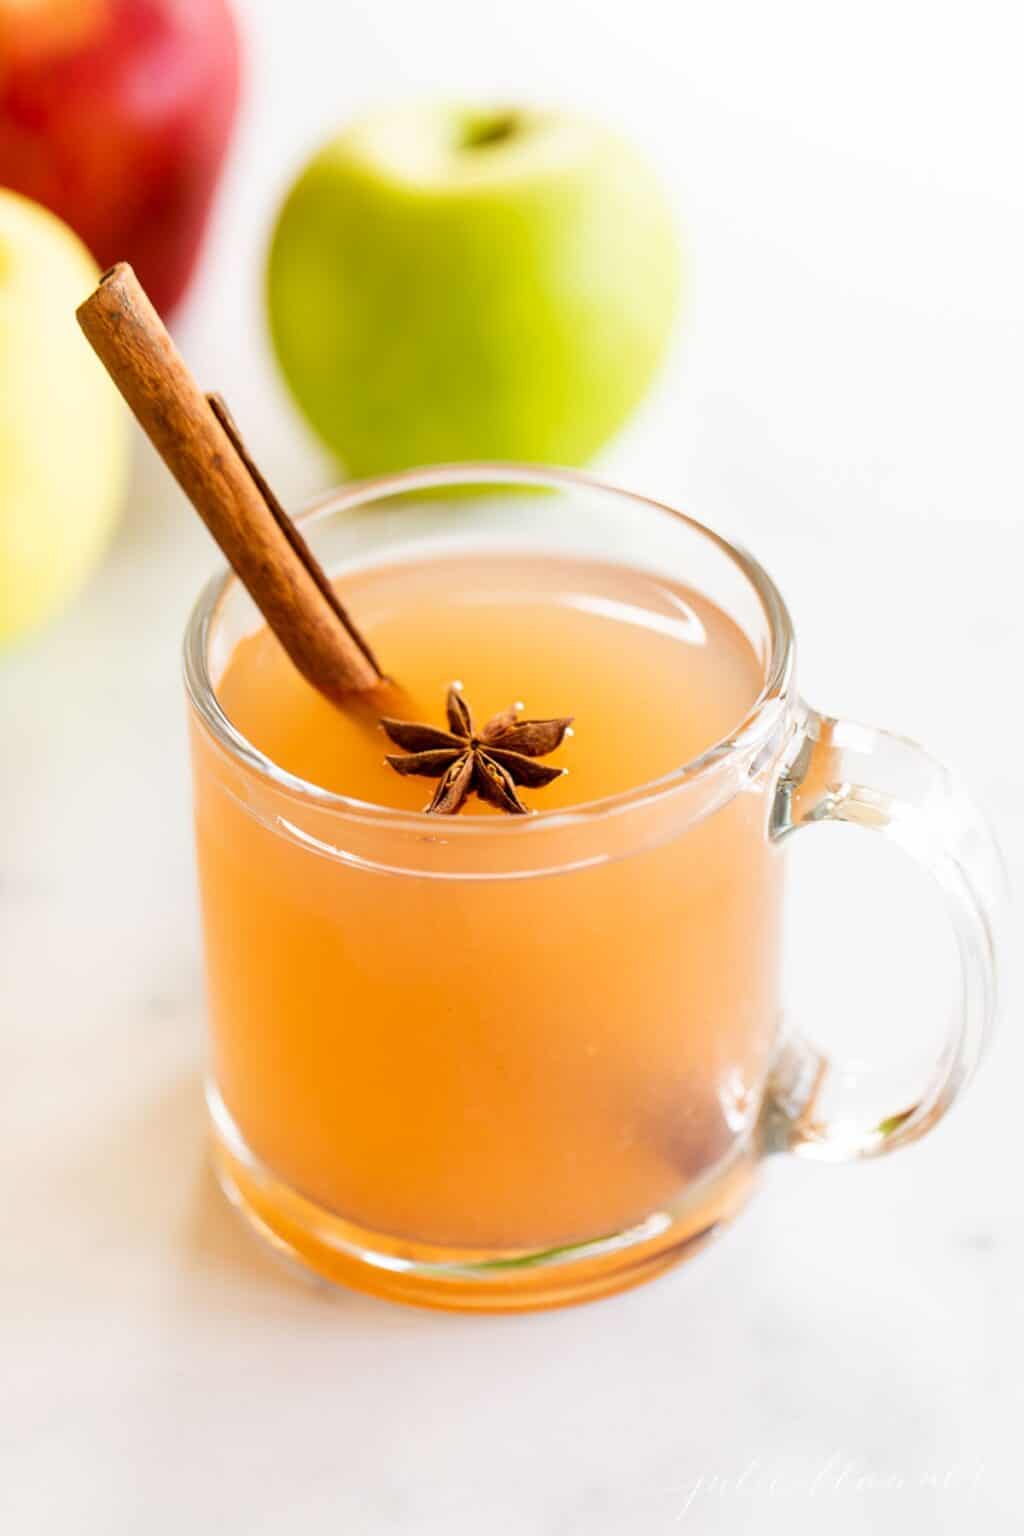 Easy Homemade Apple Cider Recipe | Julie Blanner